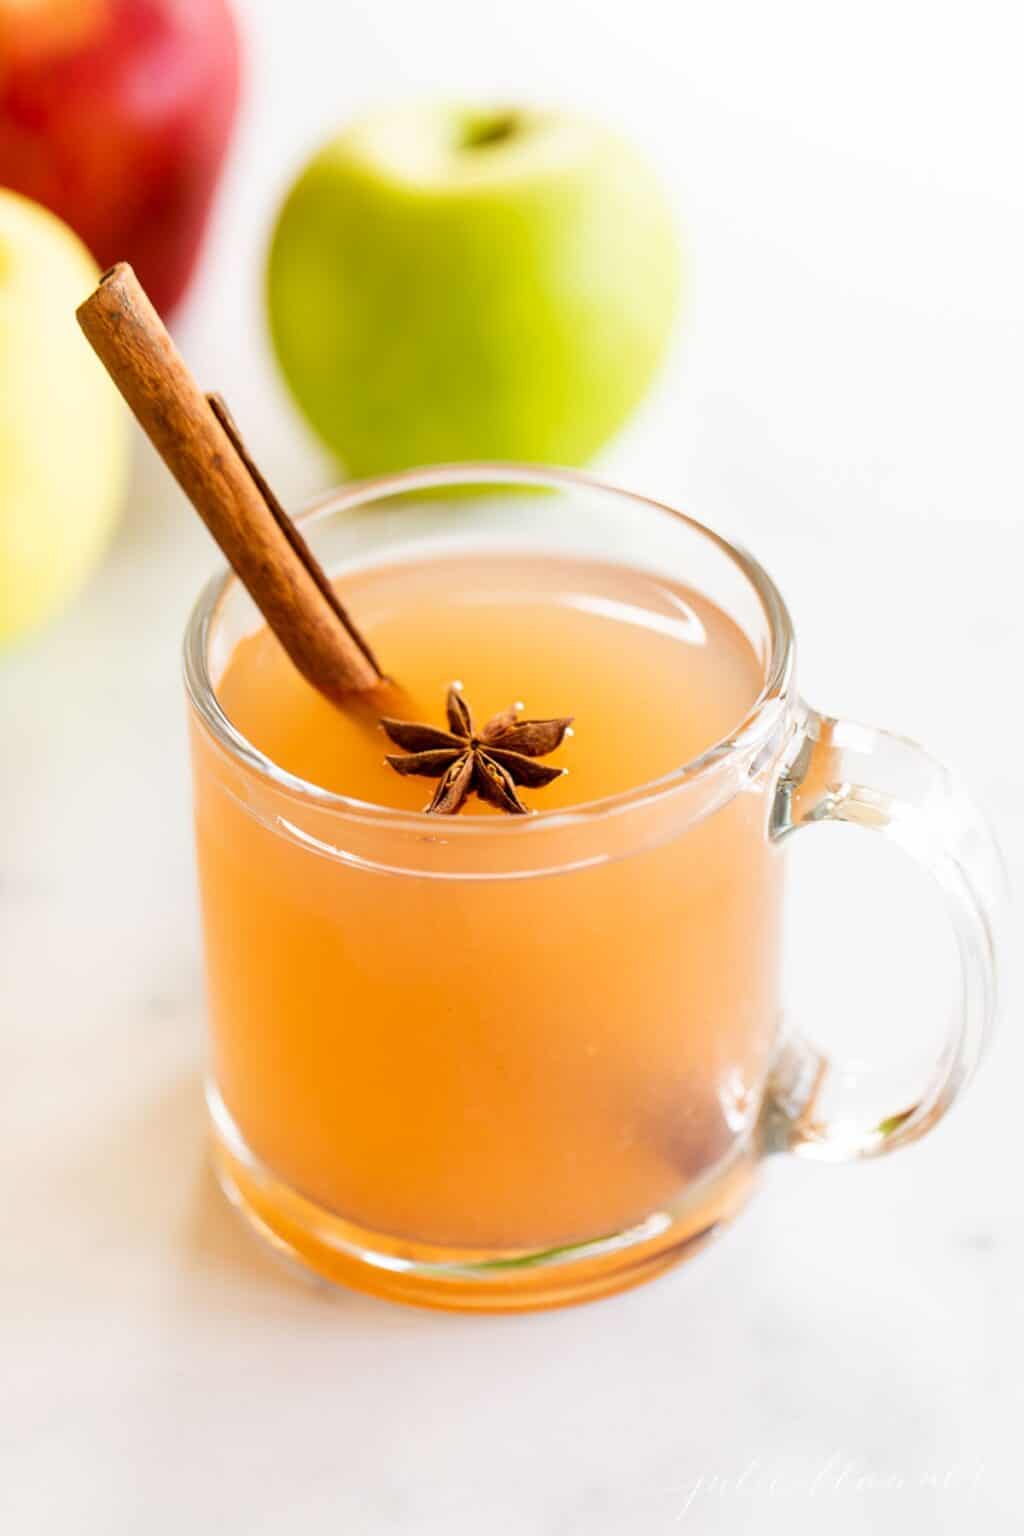 Easy Homemade Apple Cider Recipe | Julie Blanner